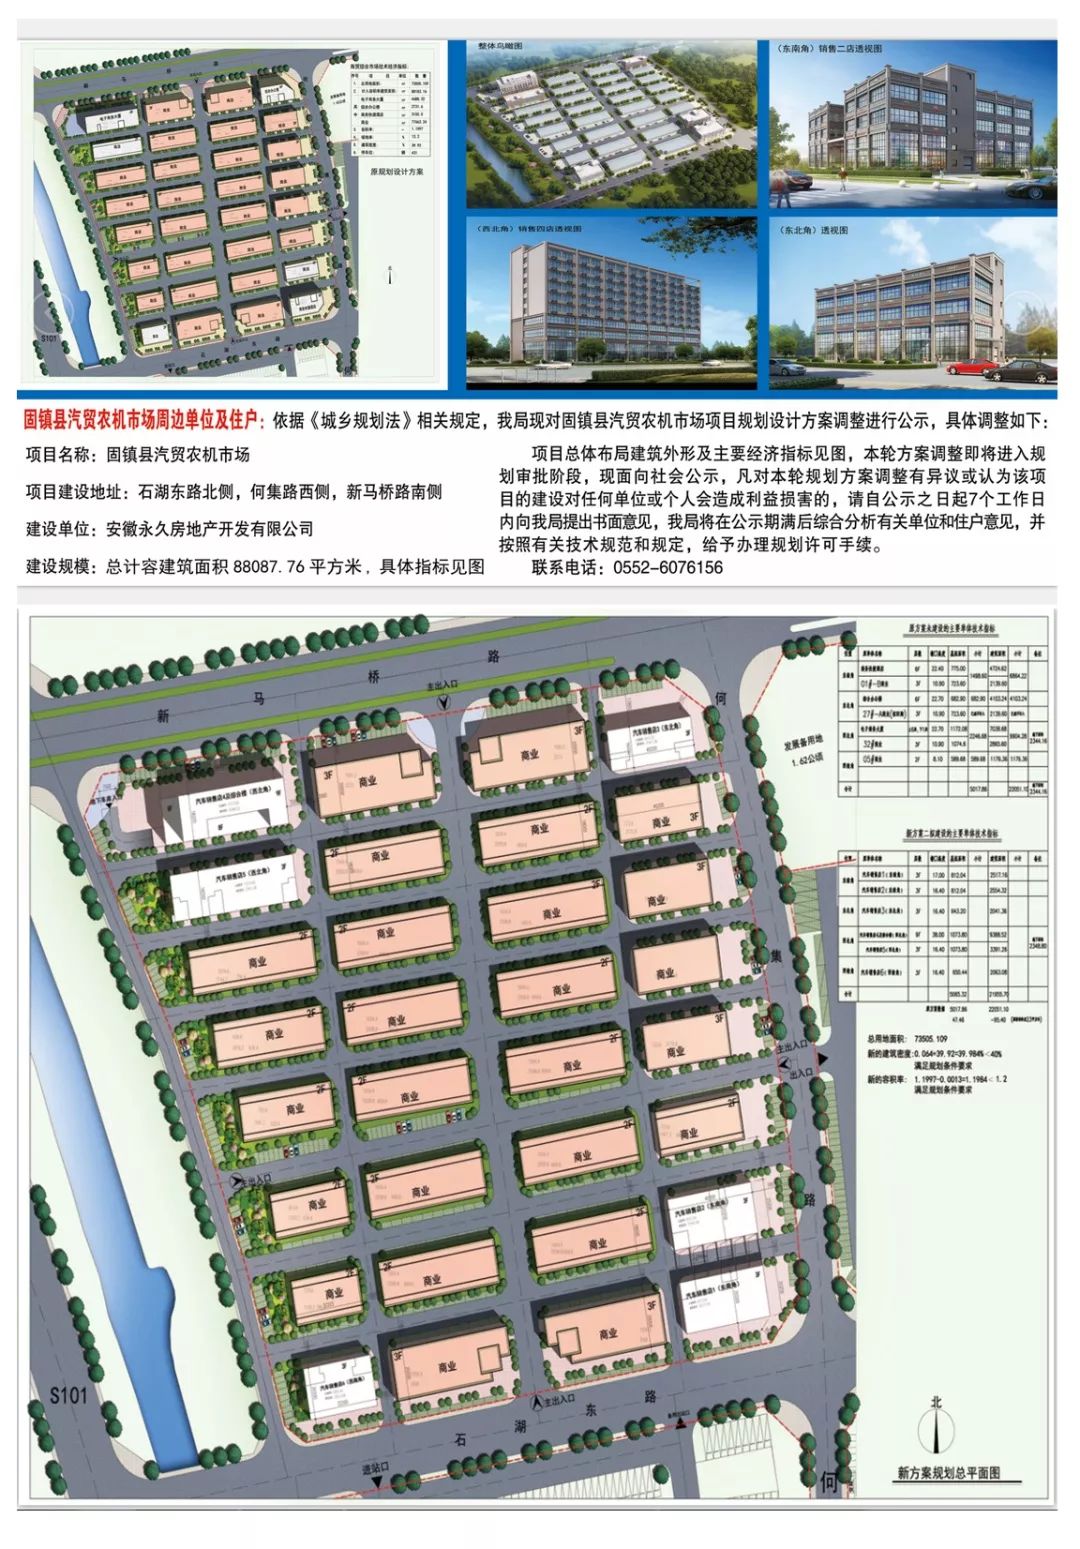 固镇县汽贸农机市场项目规划设计方案调整批前公示